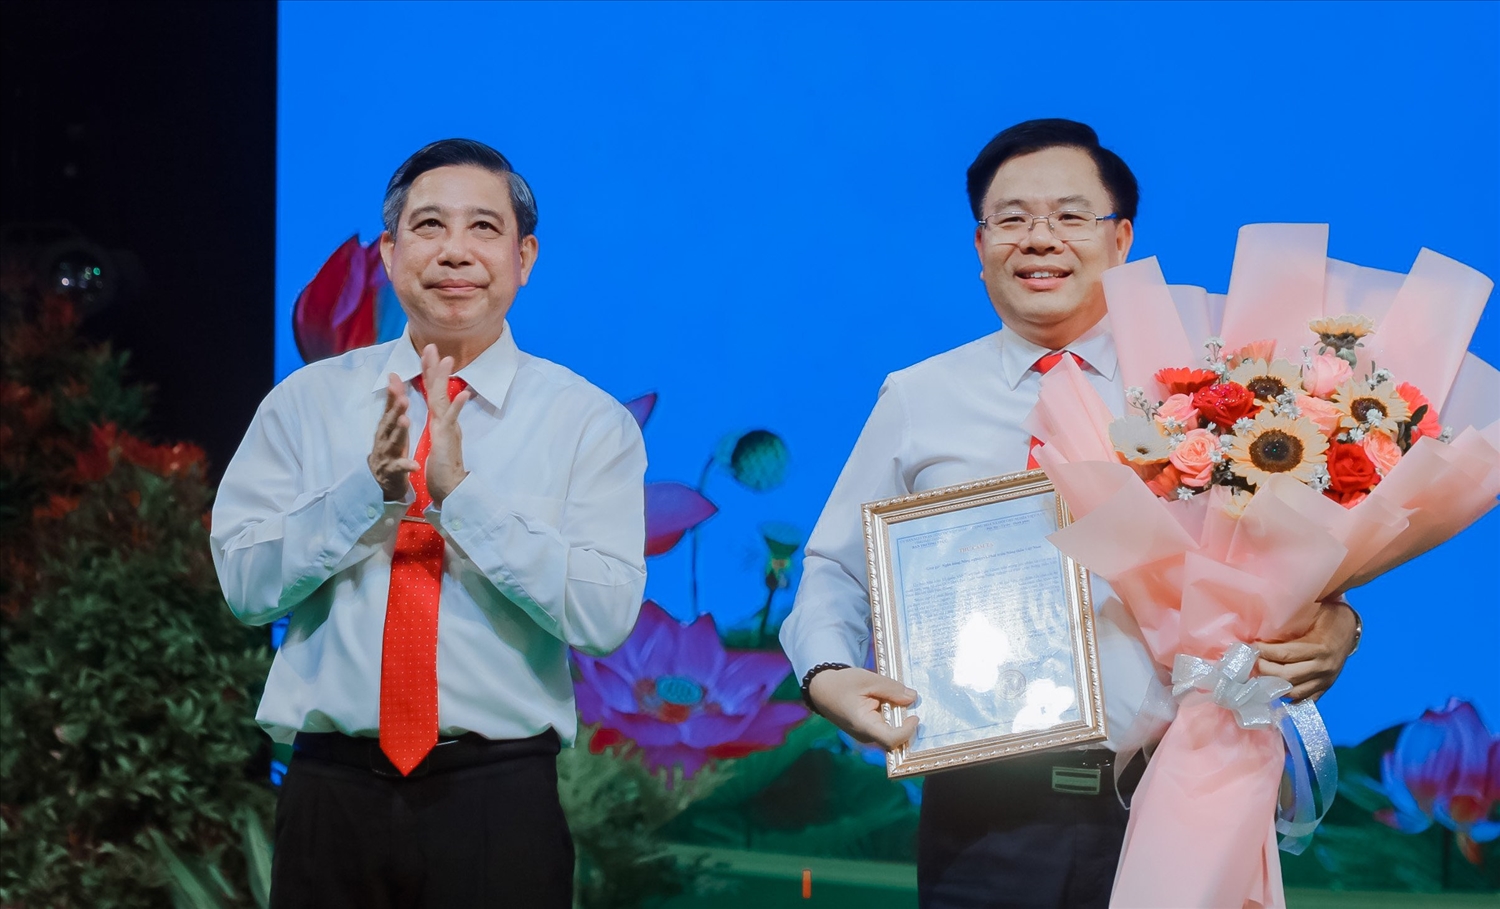  Ông Đồng Văn Thanh, Chủ tịch UBND tỉnh Hậu Giang trao thư cám ơn đến nhà tài trợ (ảnh CTV)